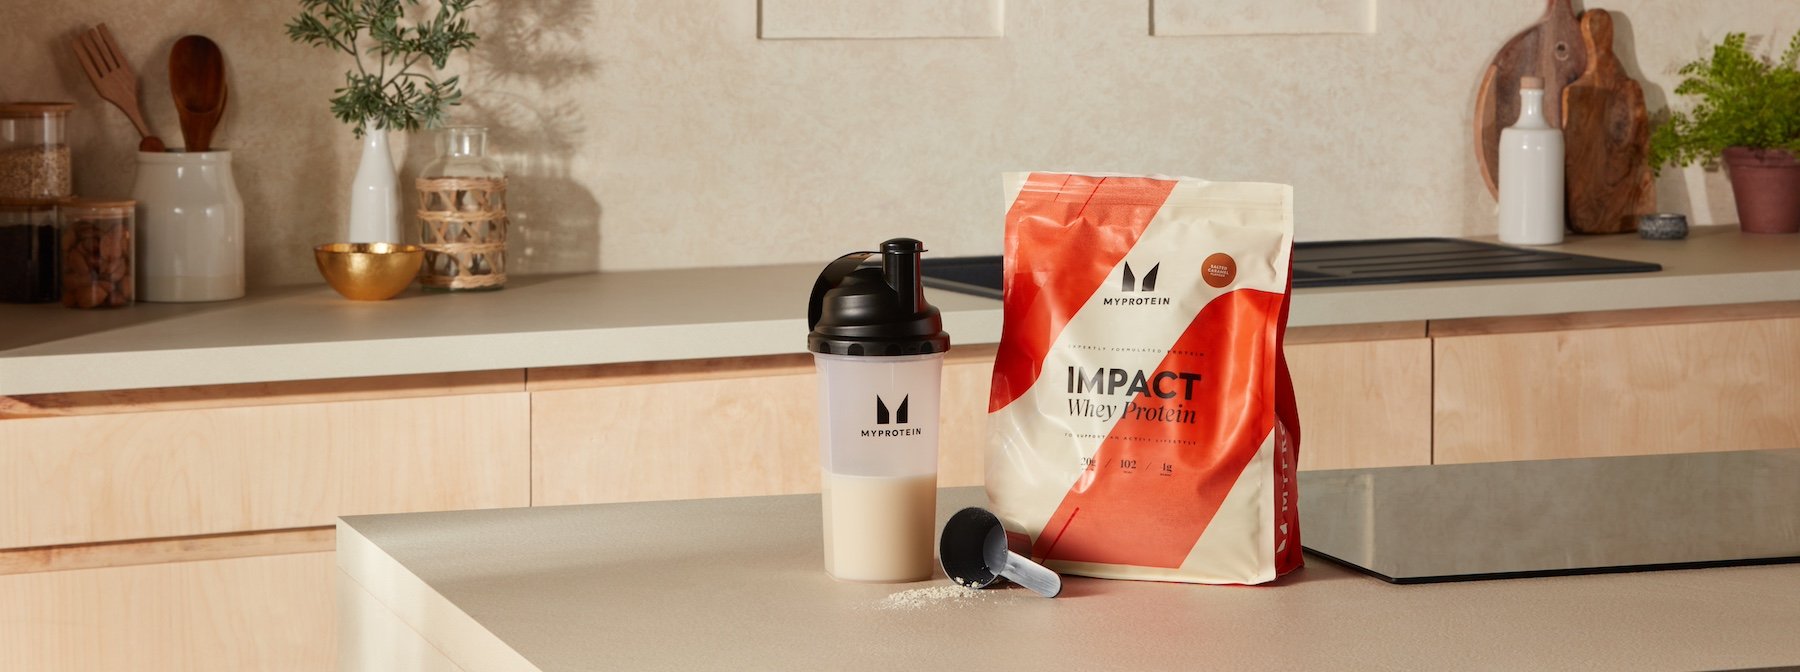 Hvor mange protein shakes om dagen er sundt?